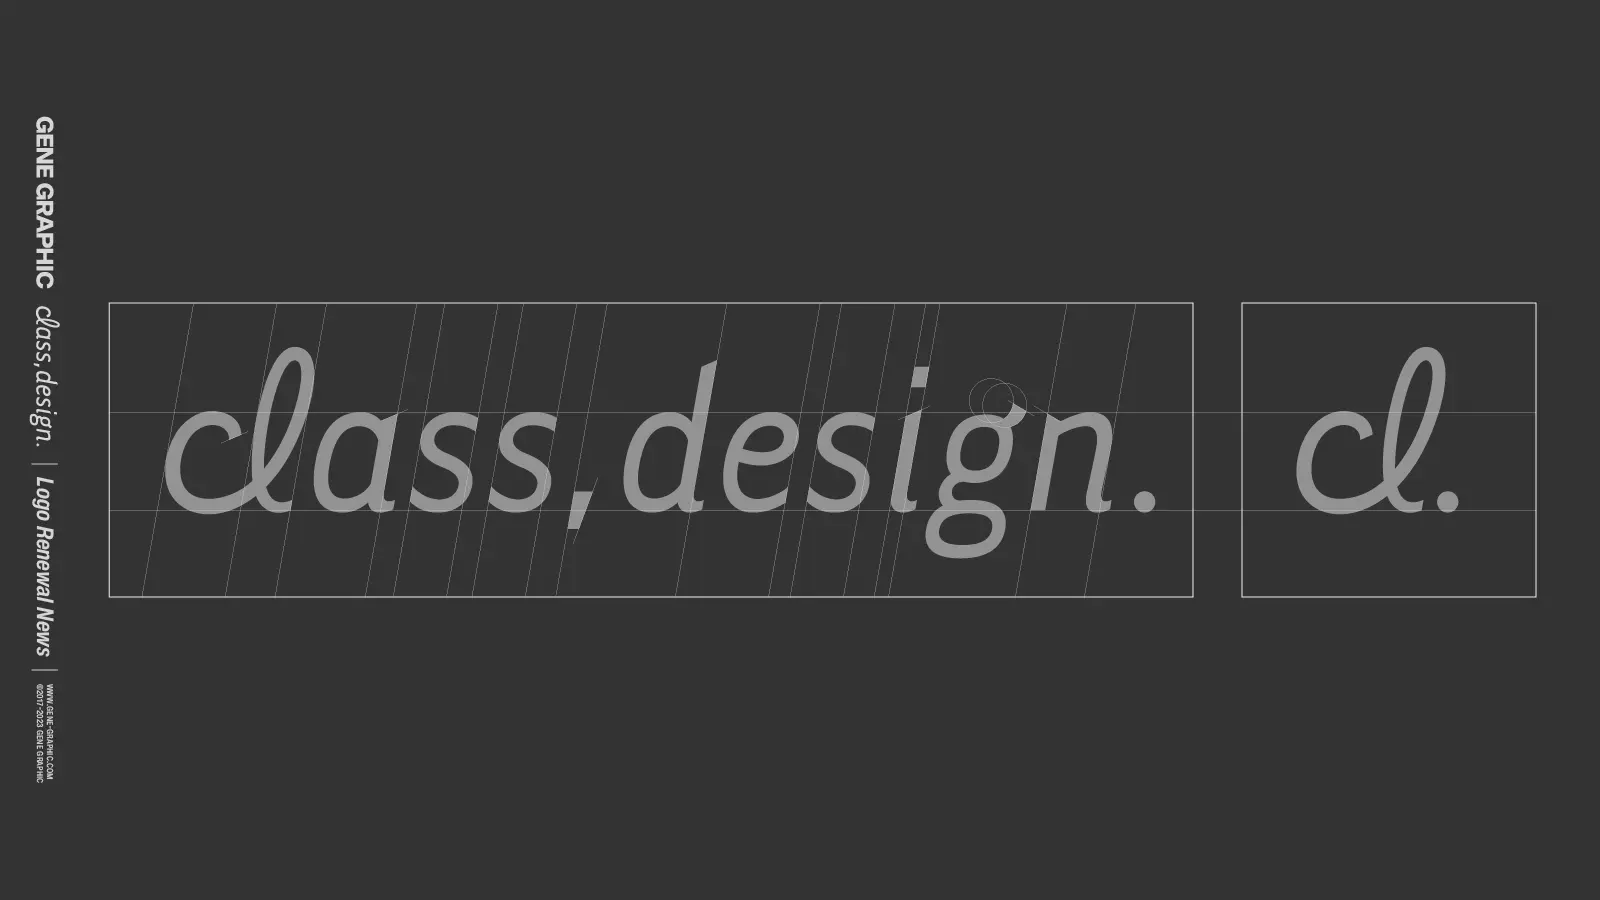 class,design. ロゴのワイヤーフレーム